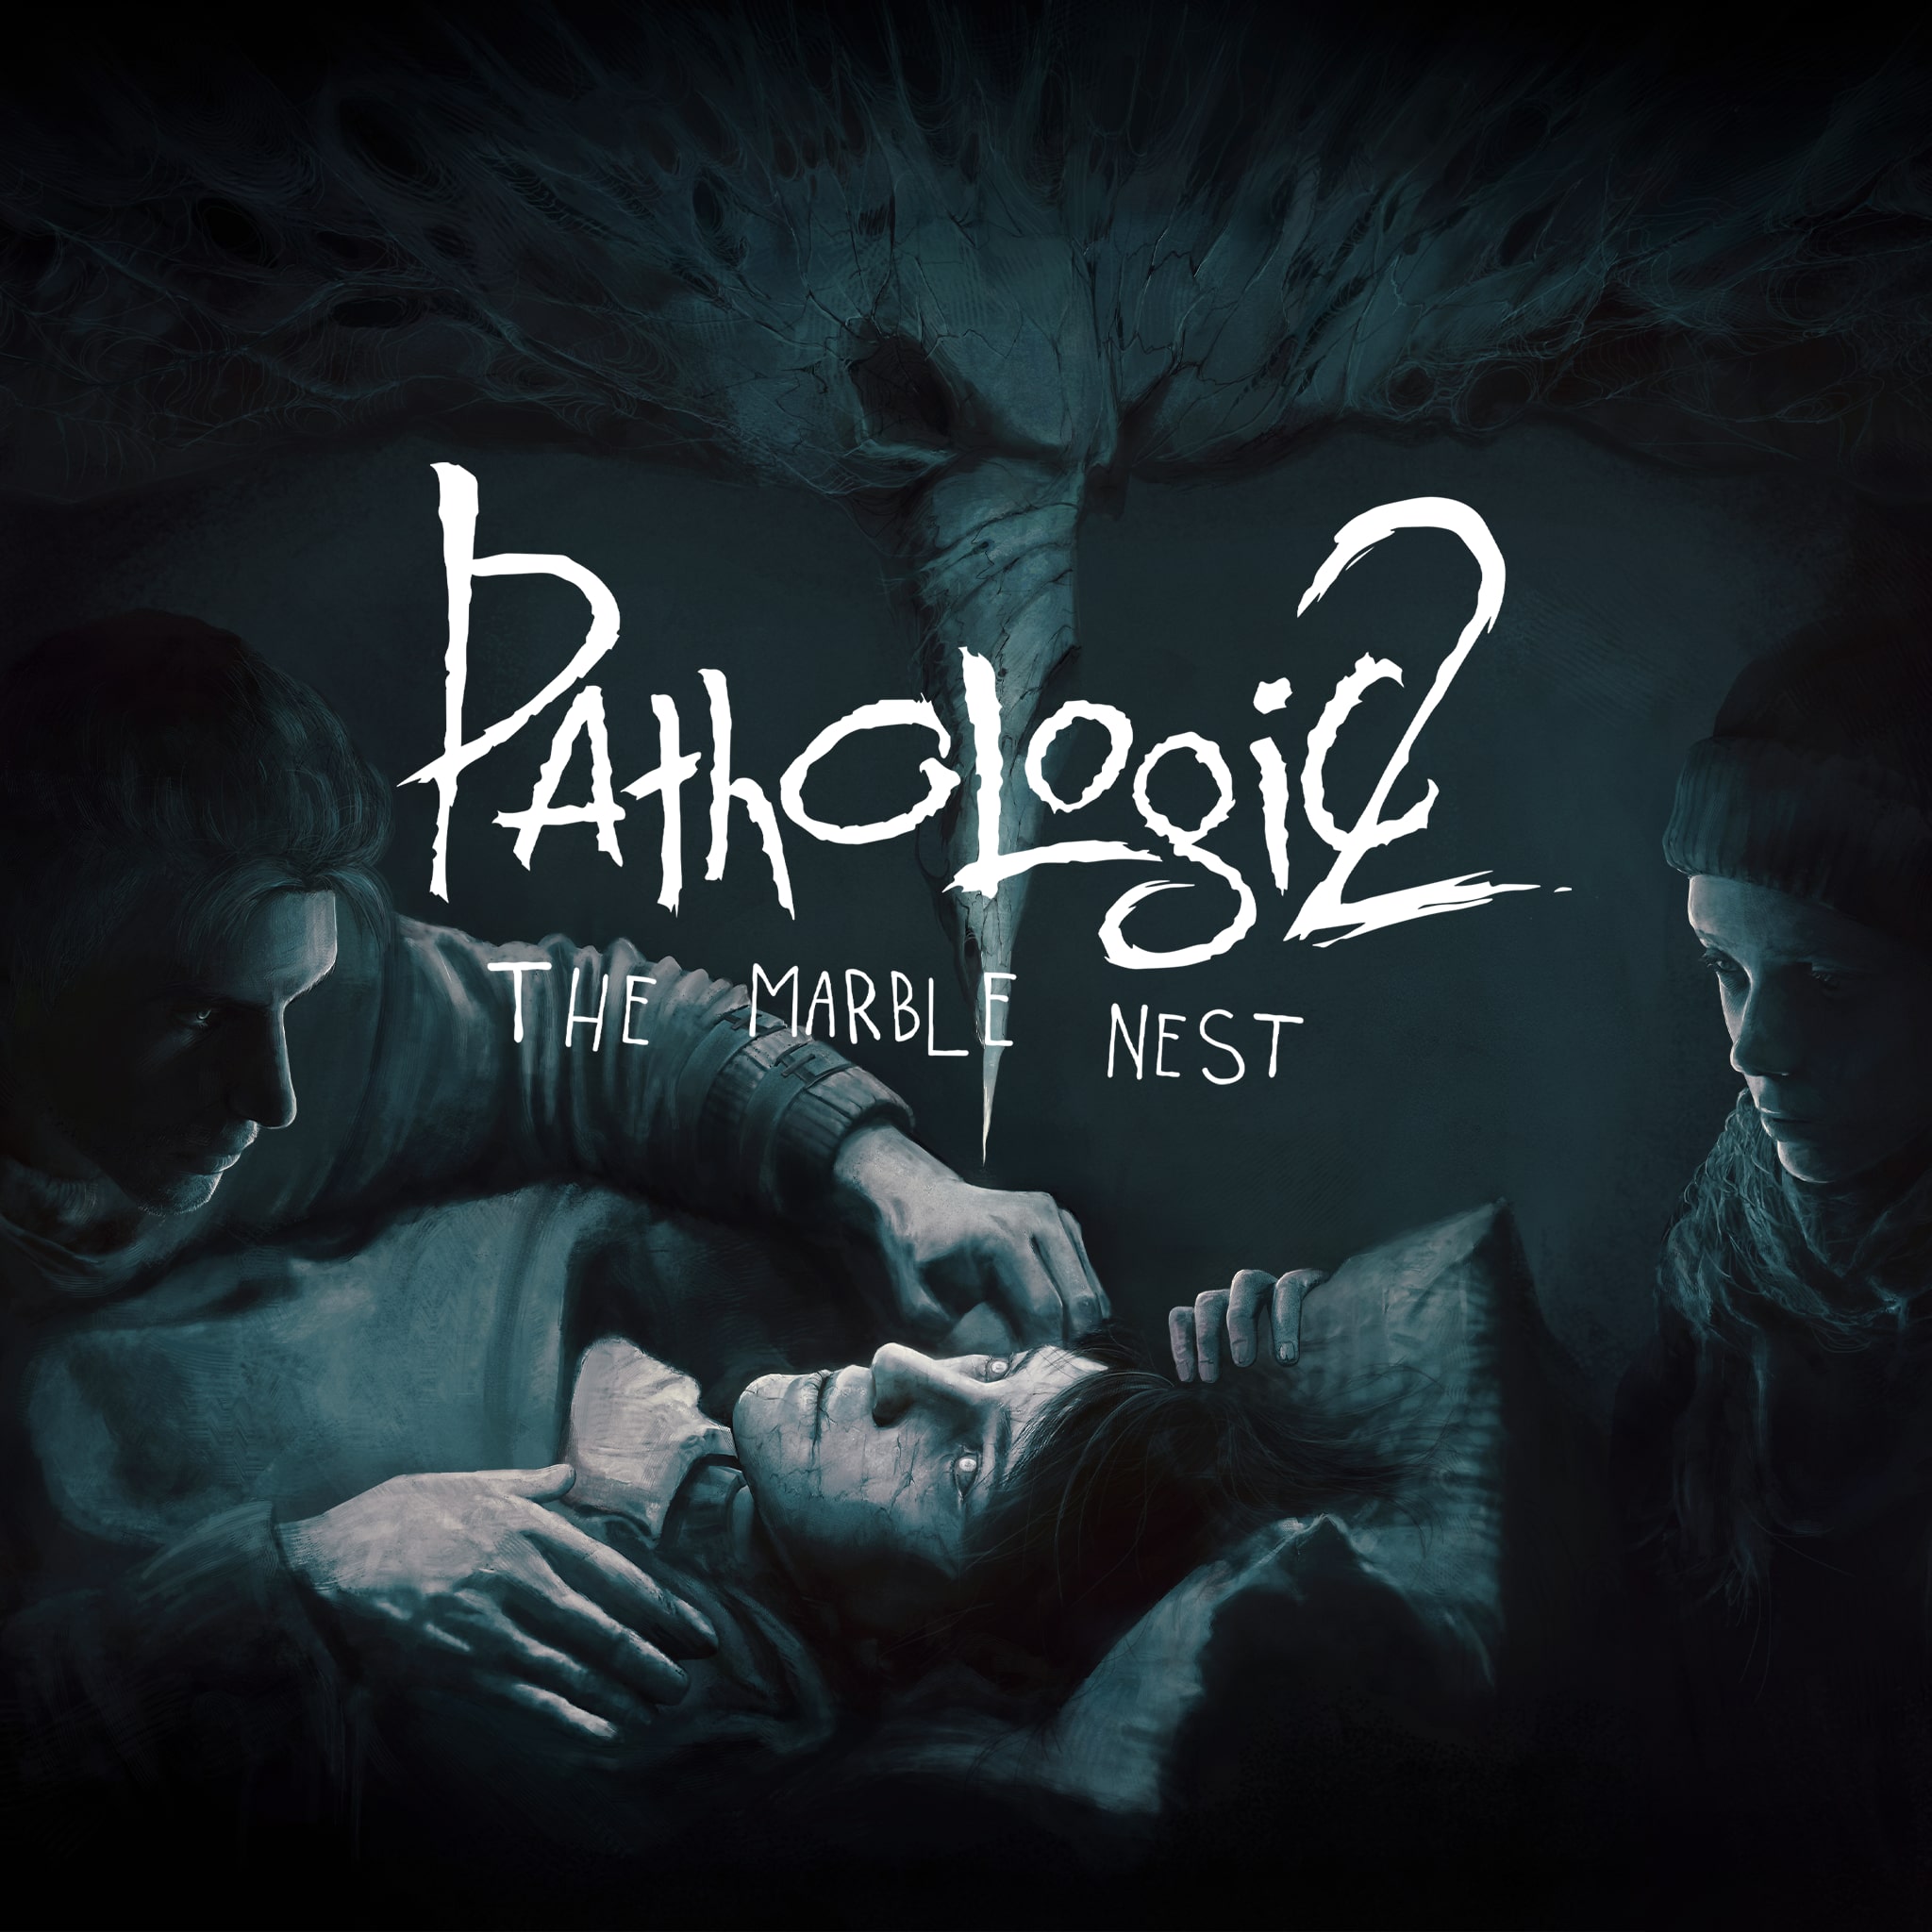 Pathologic 2 - The Marble Nest